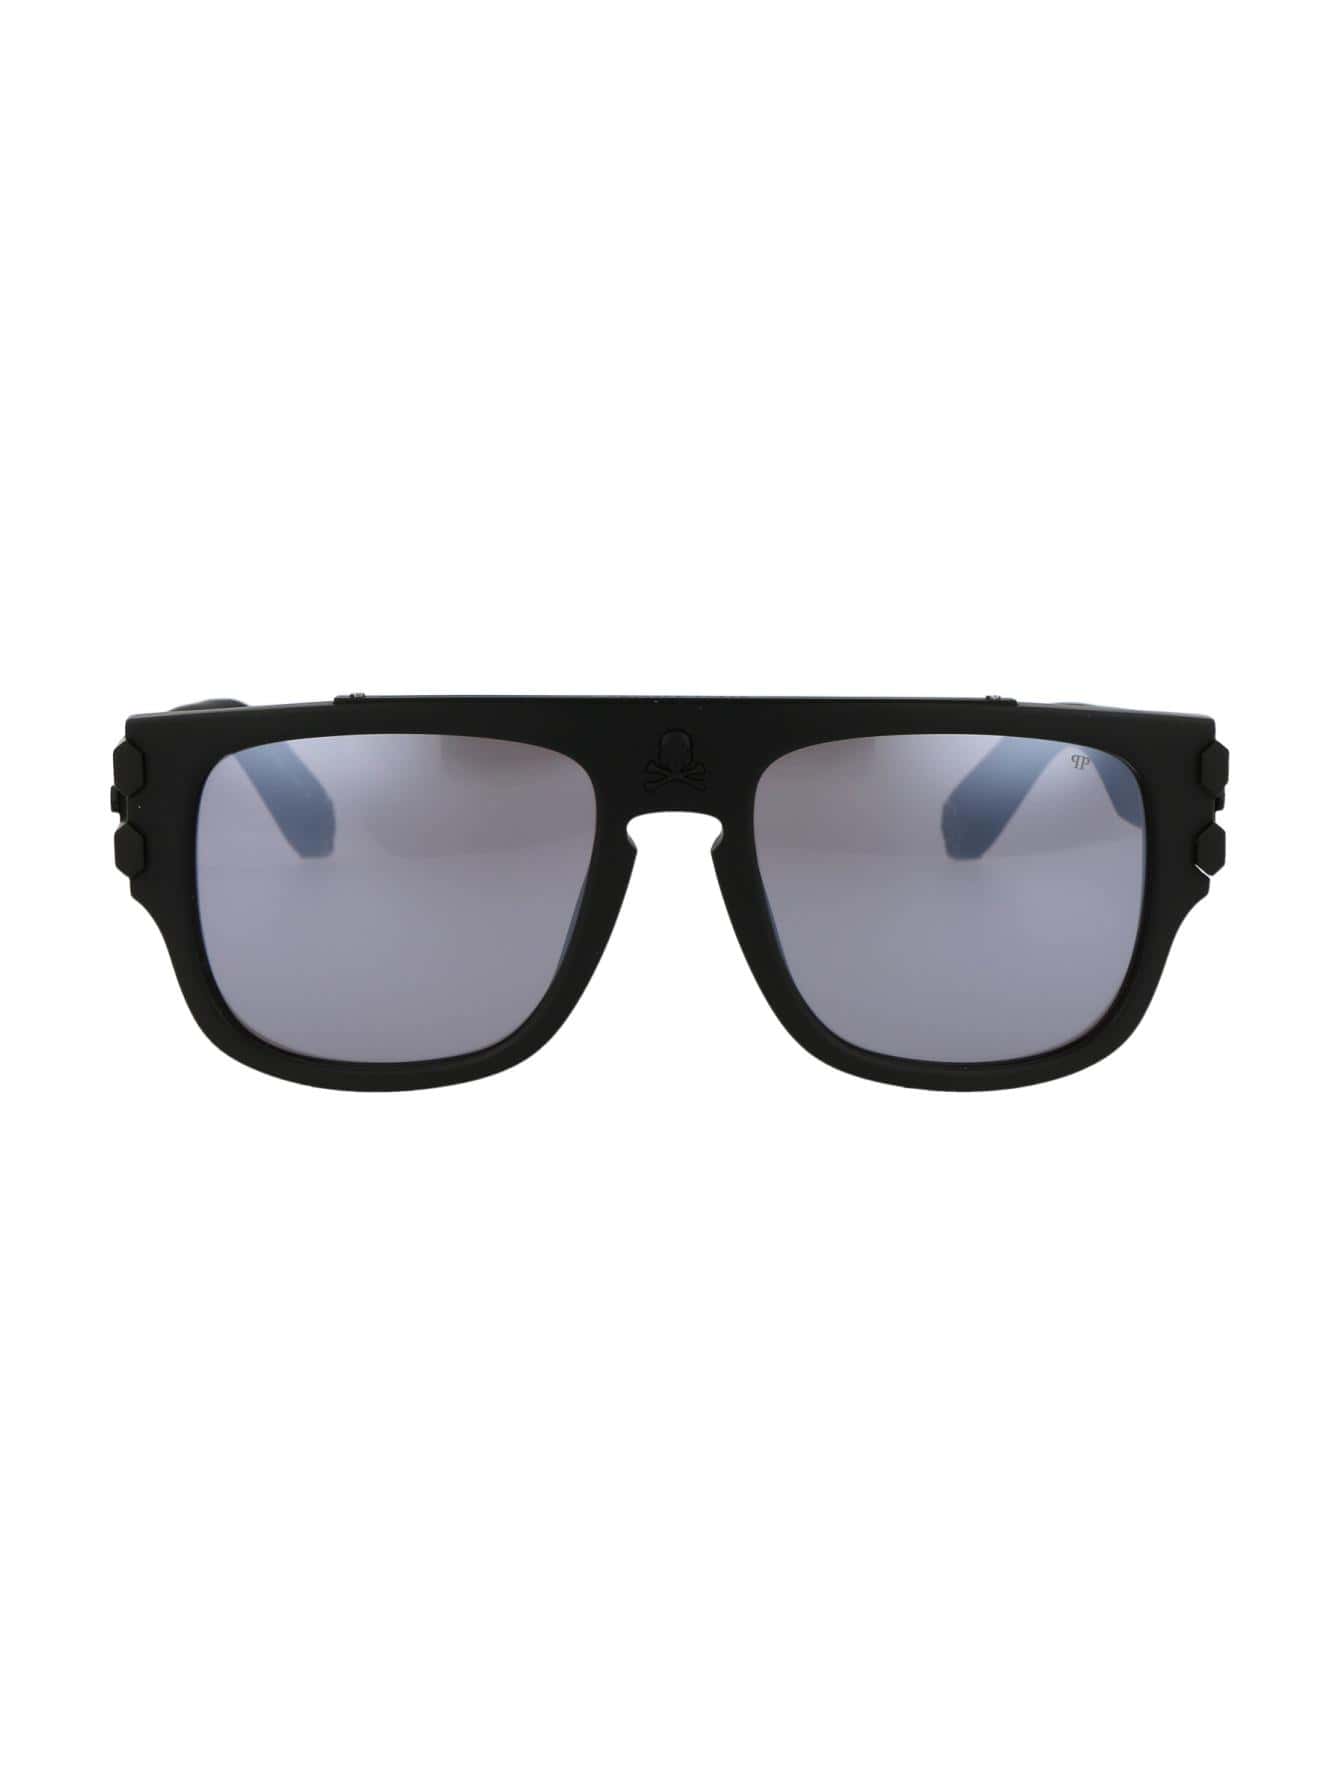 Мужские солнцезащитные очки Philipp Plein DECOR SPP011W703M, многоцветный солнцезащитные очки philipp plein 025s 700